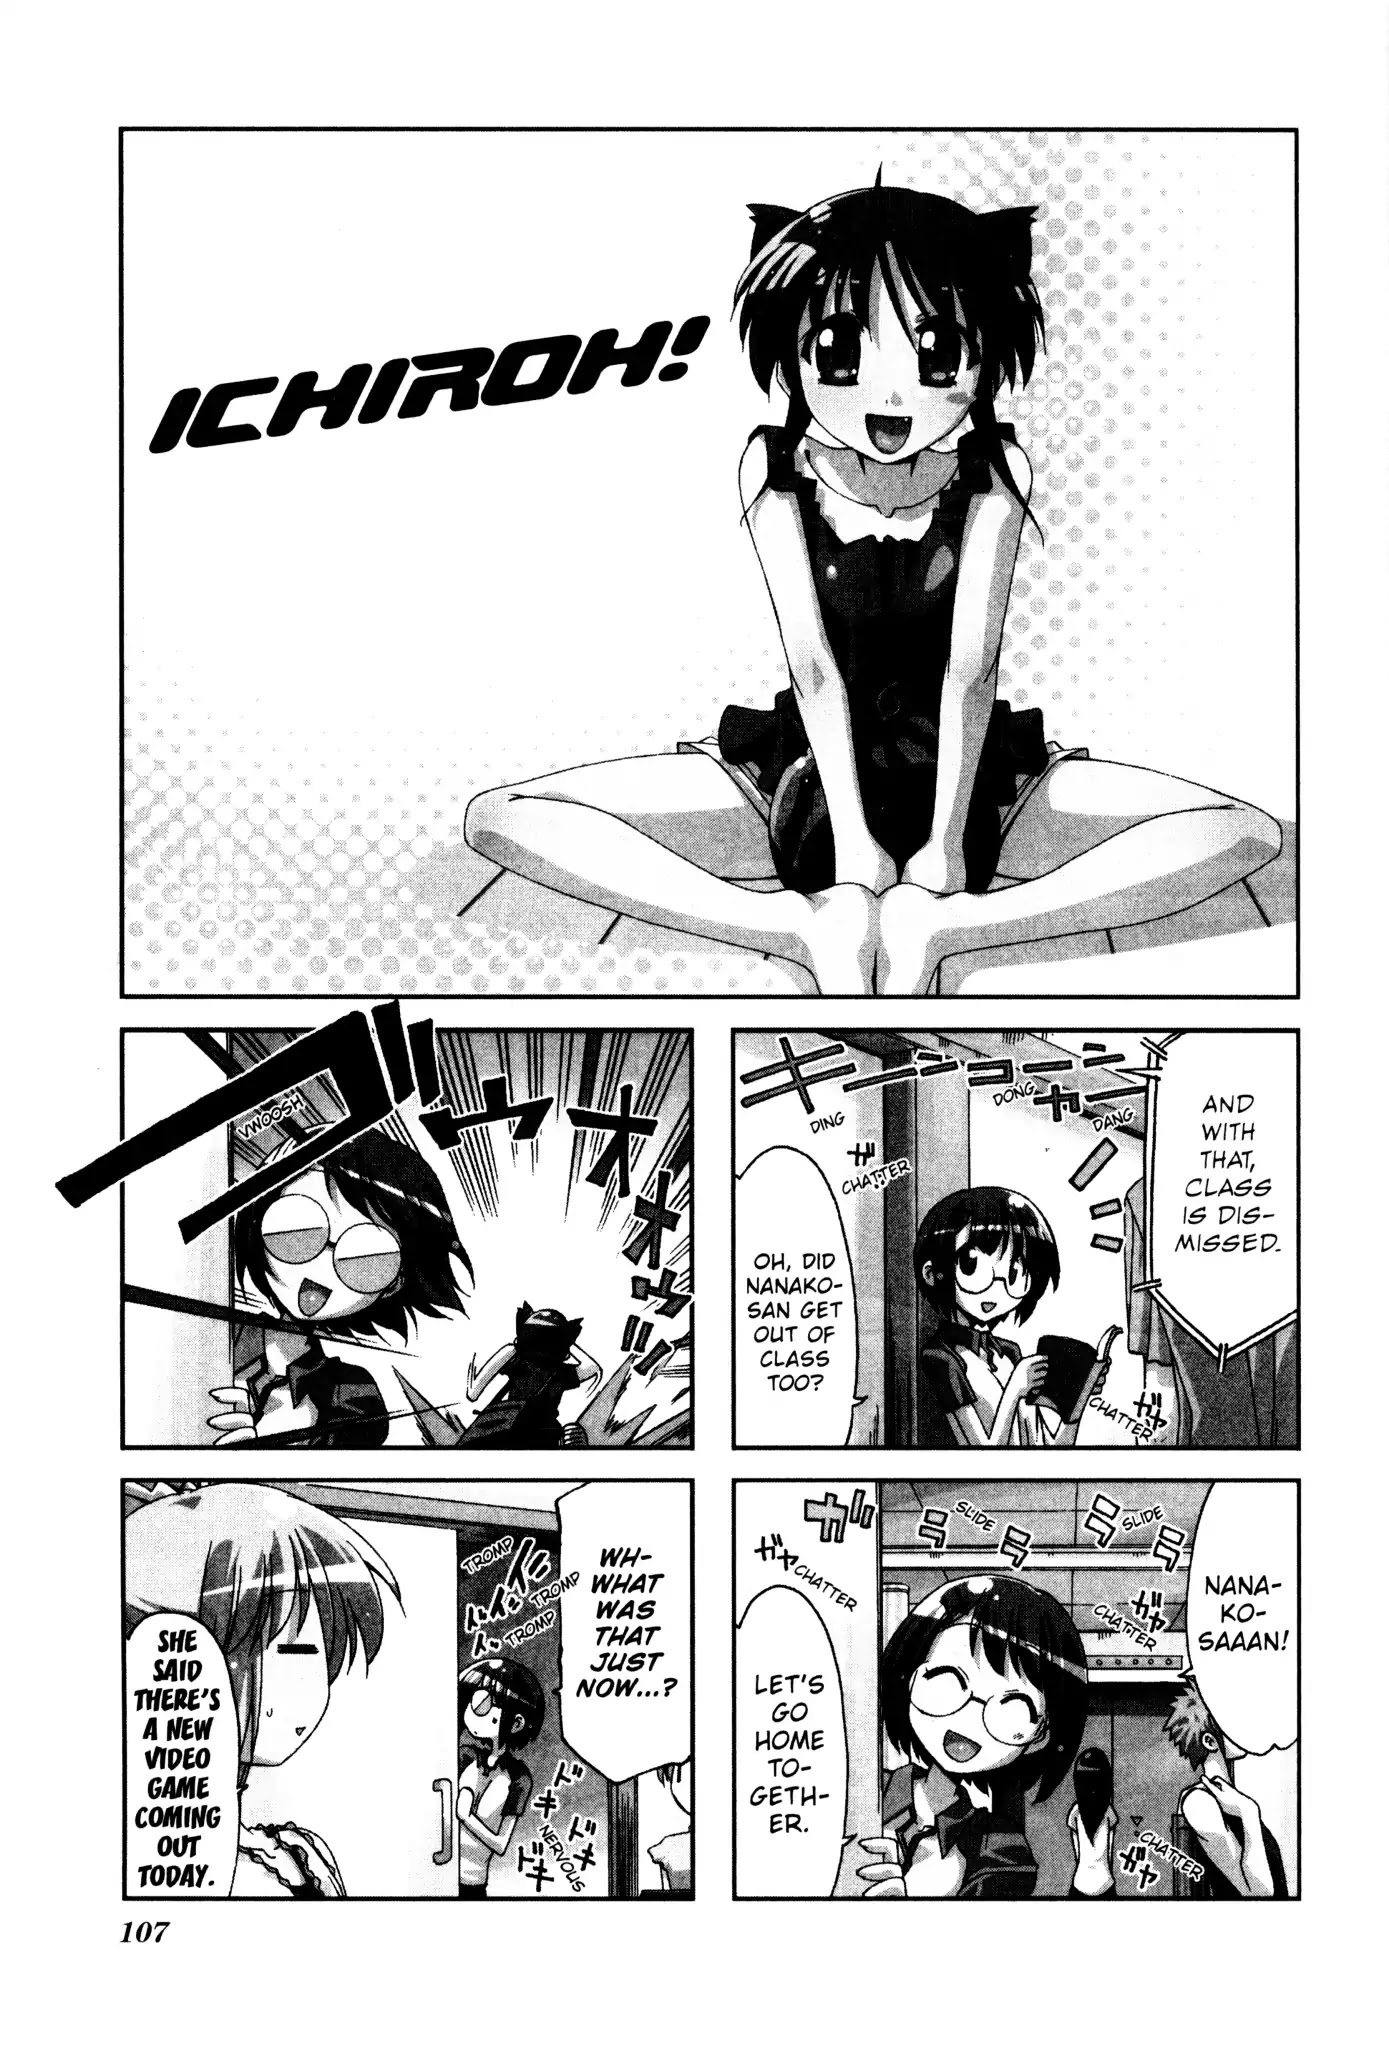 Ichiroh! - Page 1